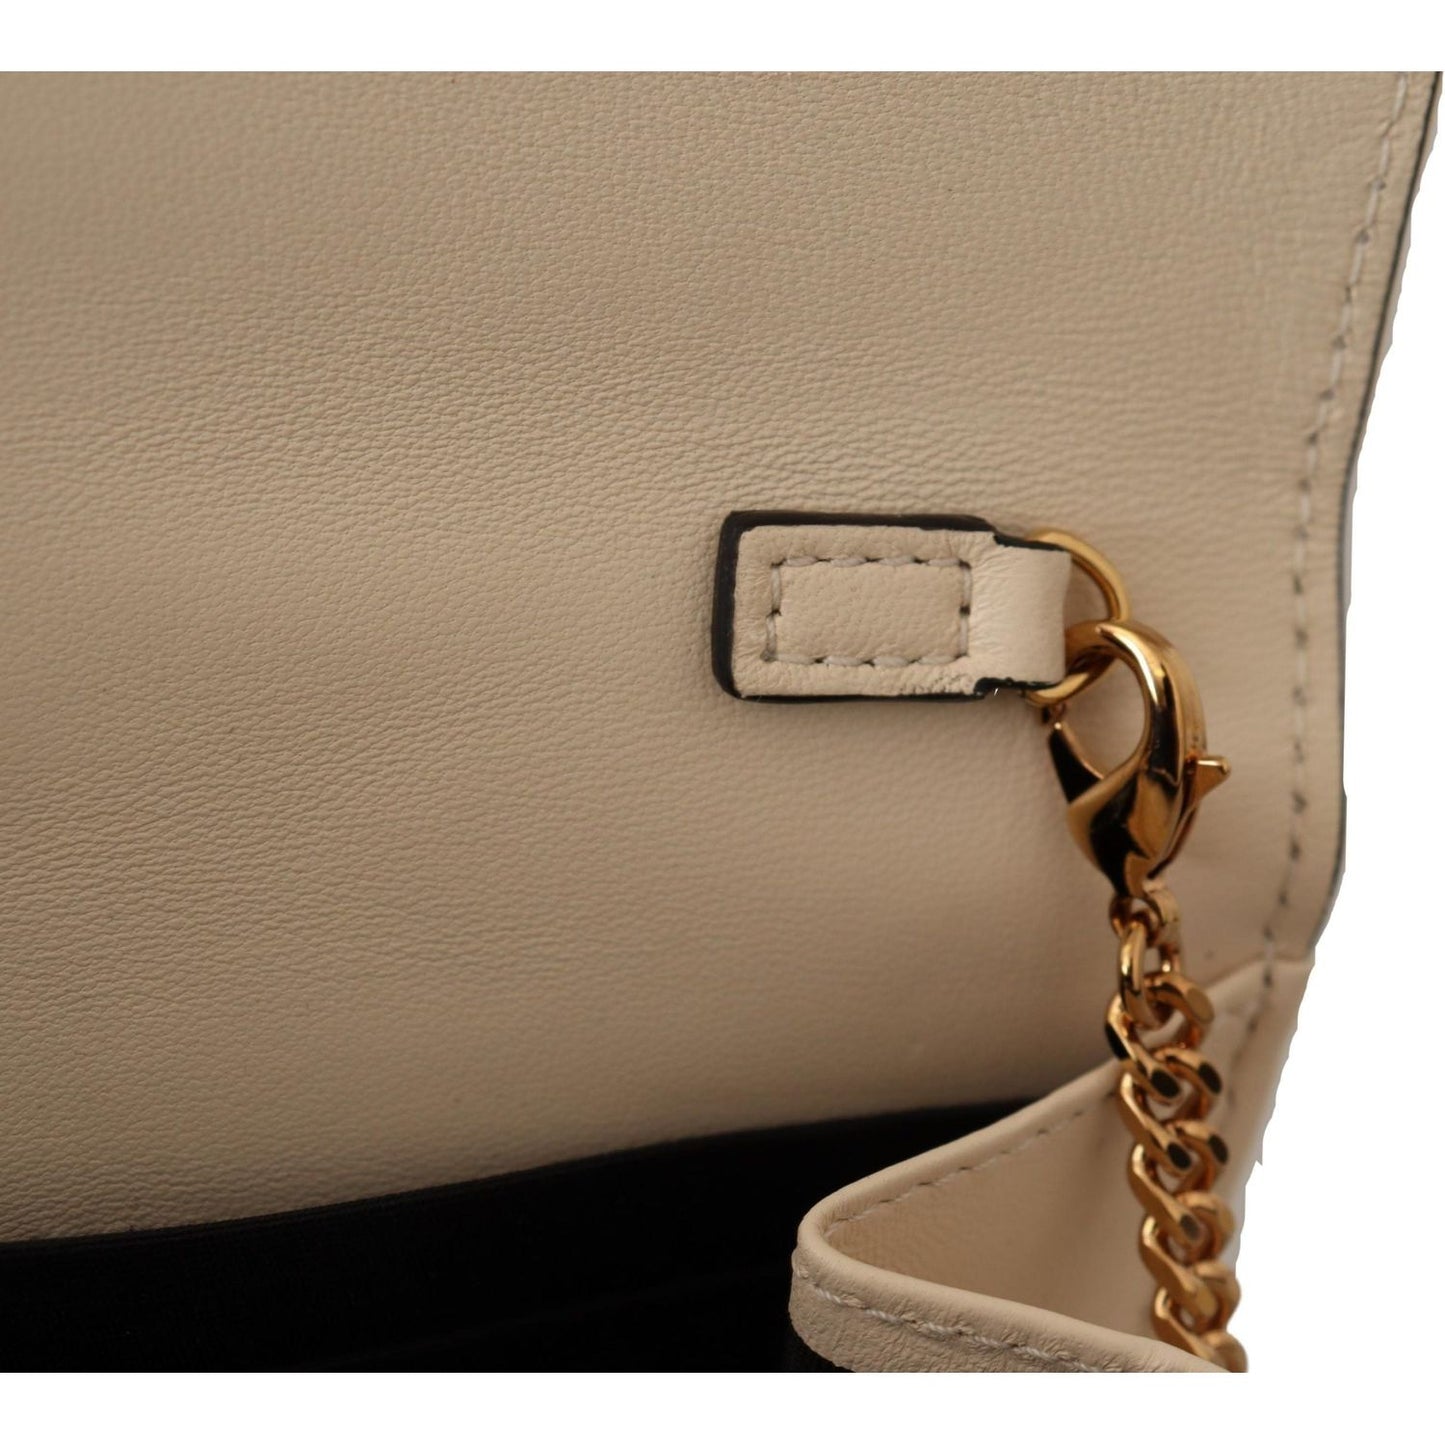 Versace | Elegant White Nappa Leather Evening Shoulder Bag| McRichard Designer Brands   